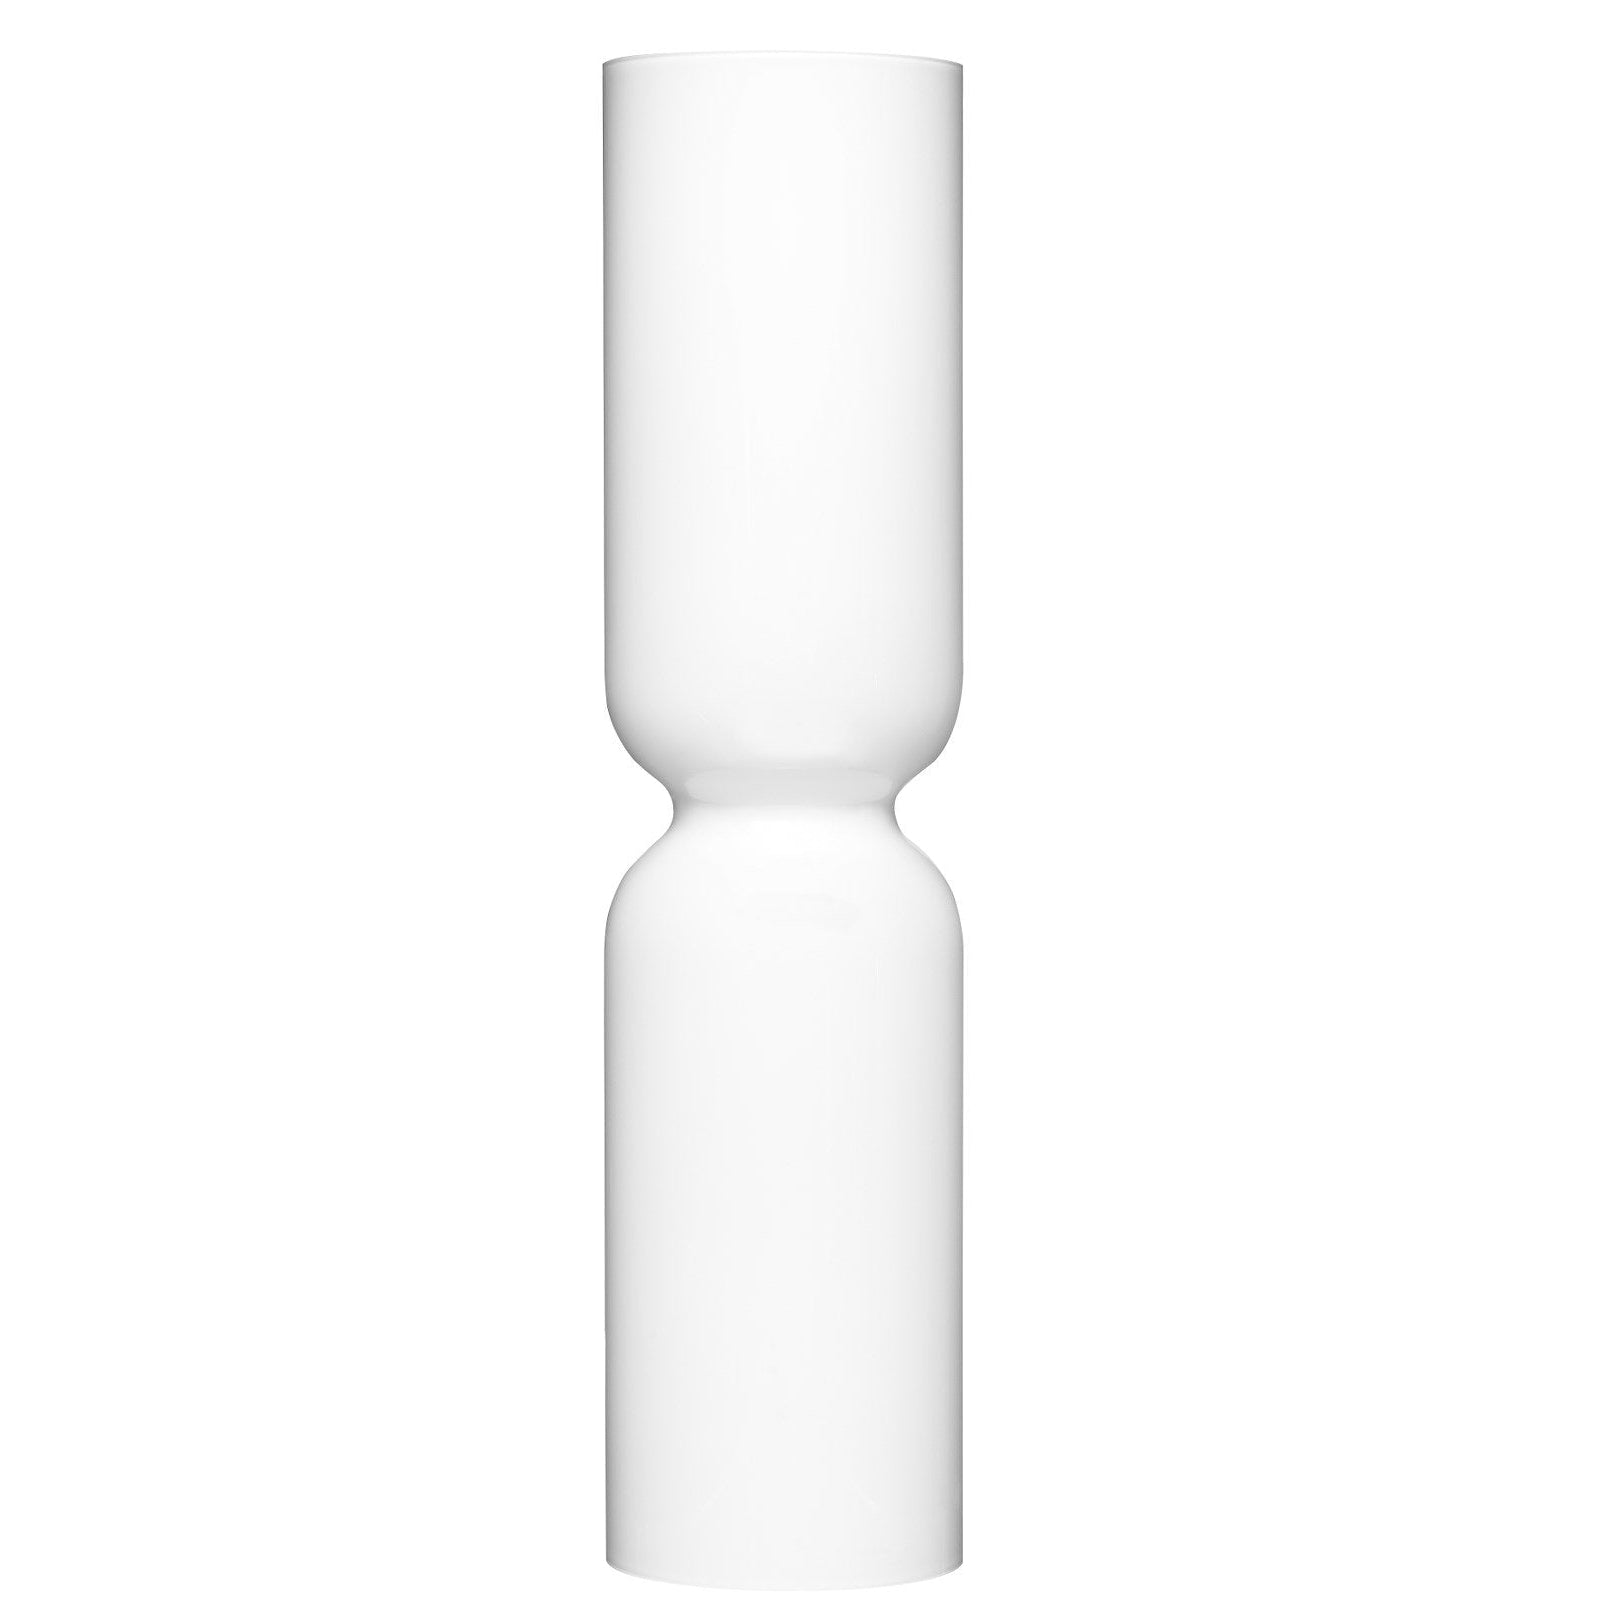 Iittala Lantaarn kaarsenhouder wit, 60 cm